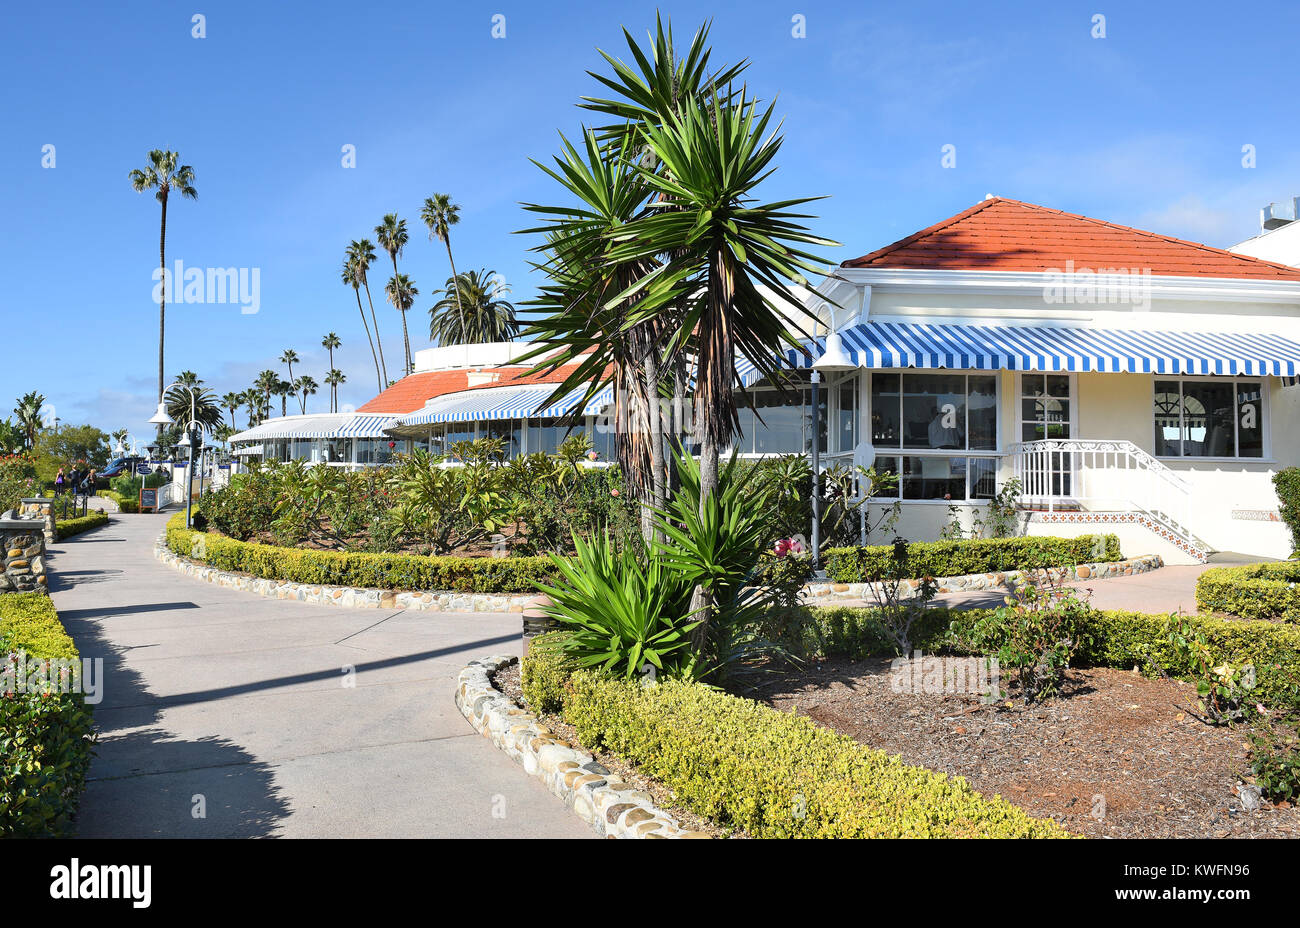 LAGUNA Beach, Kalifornien - 6. JANUAR 2017: Las Brisas Restaurant. Aussicht auf den Pazifischen Ozean, eine Terrasse und einen mexikanischen Meeresfrüchte sind das Restaurant Stockfoto